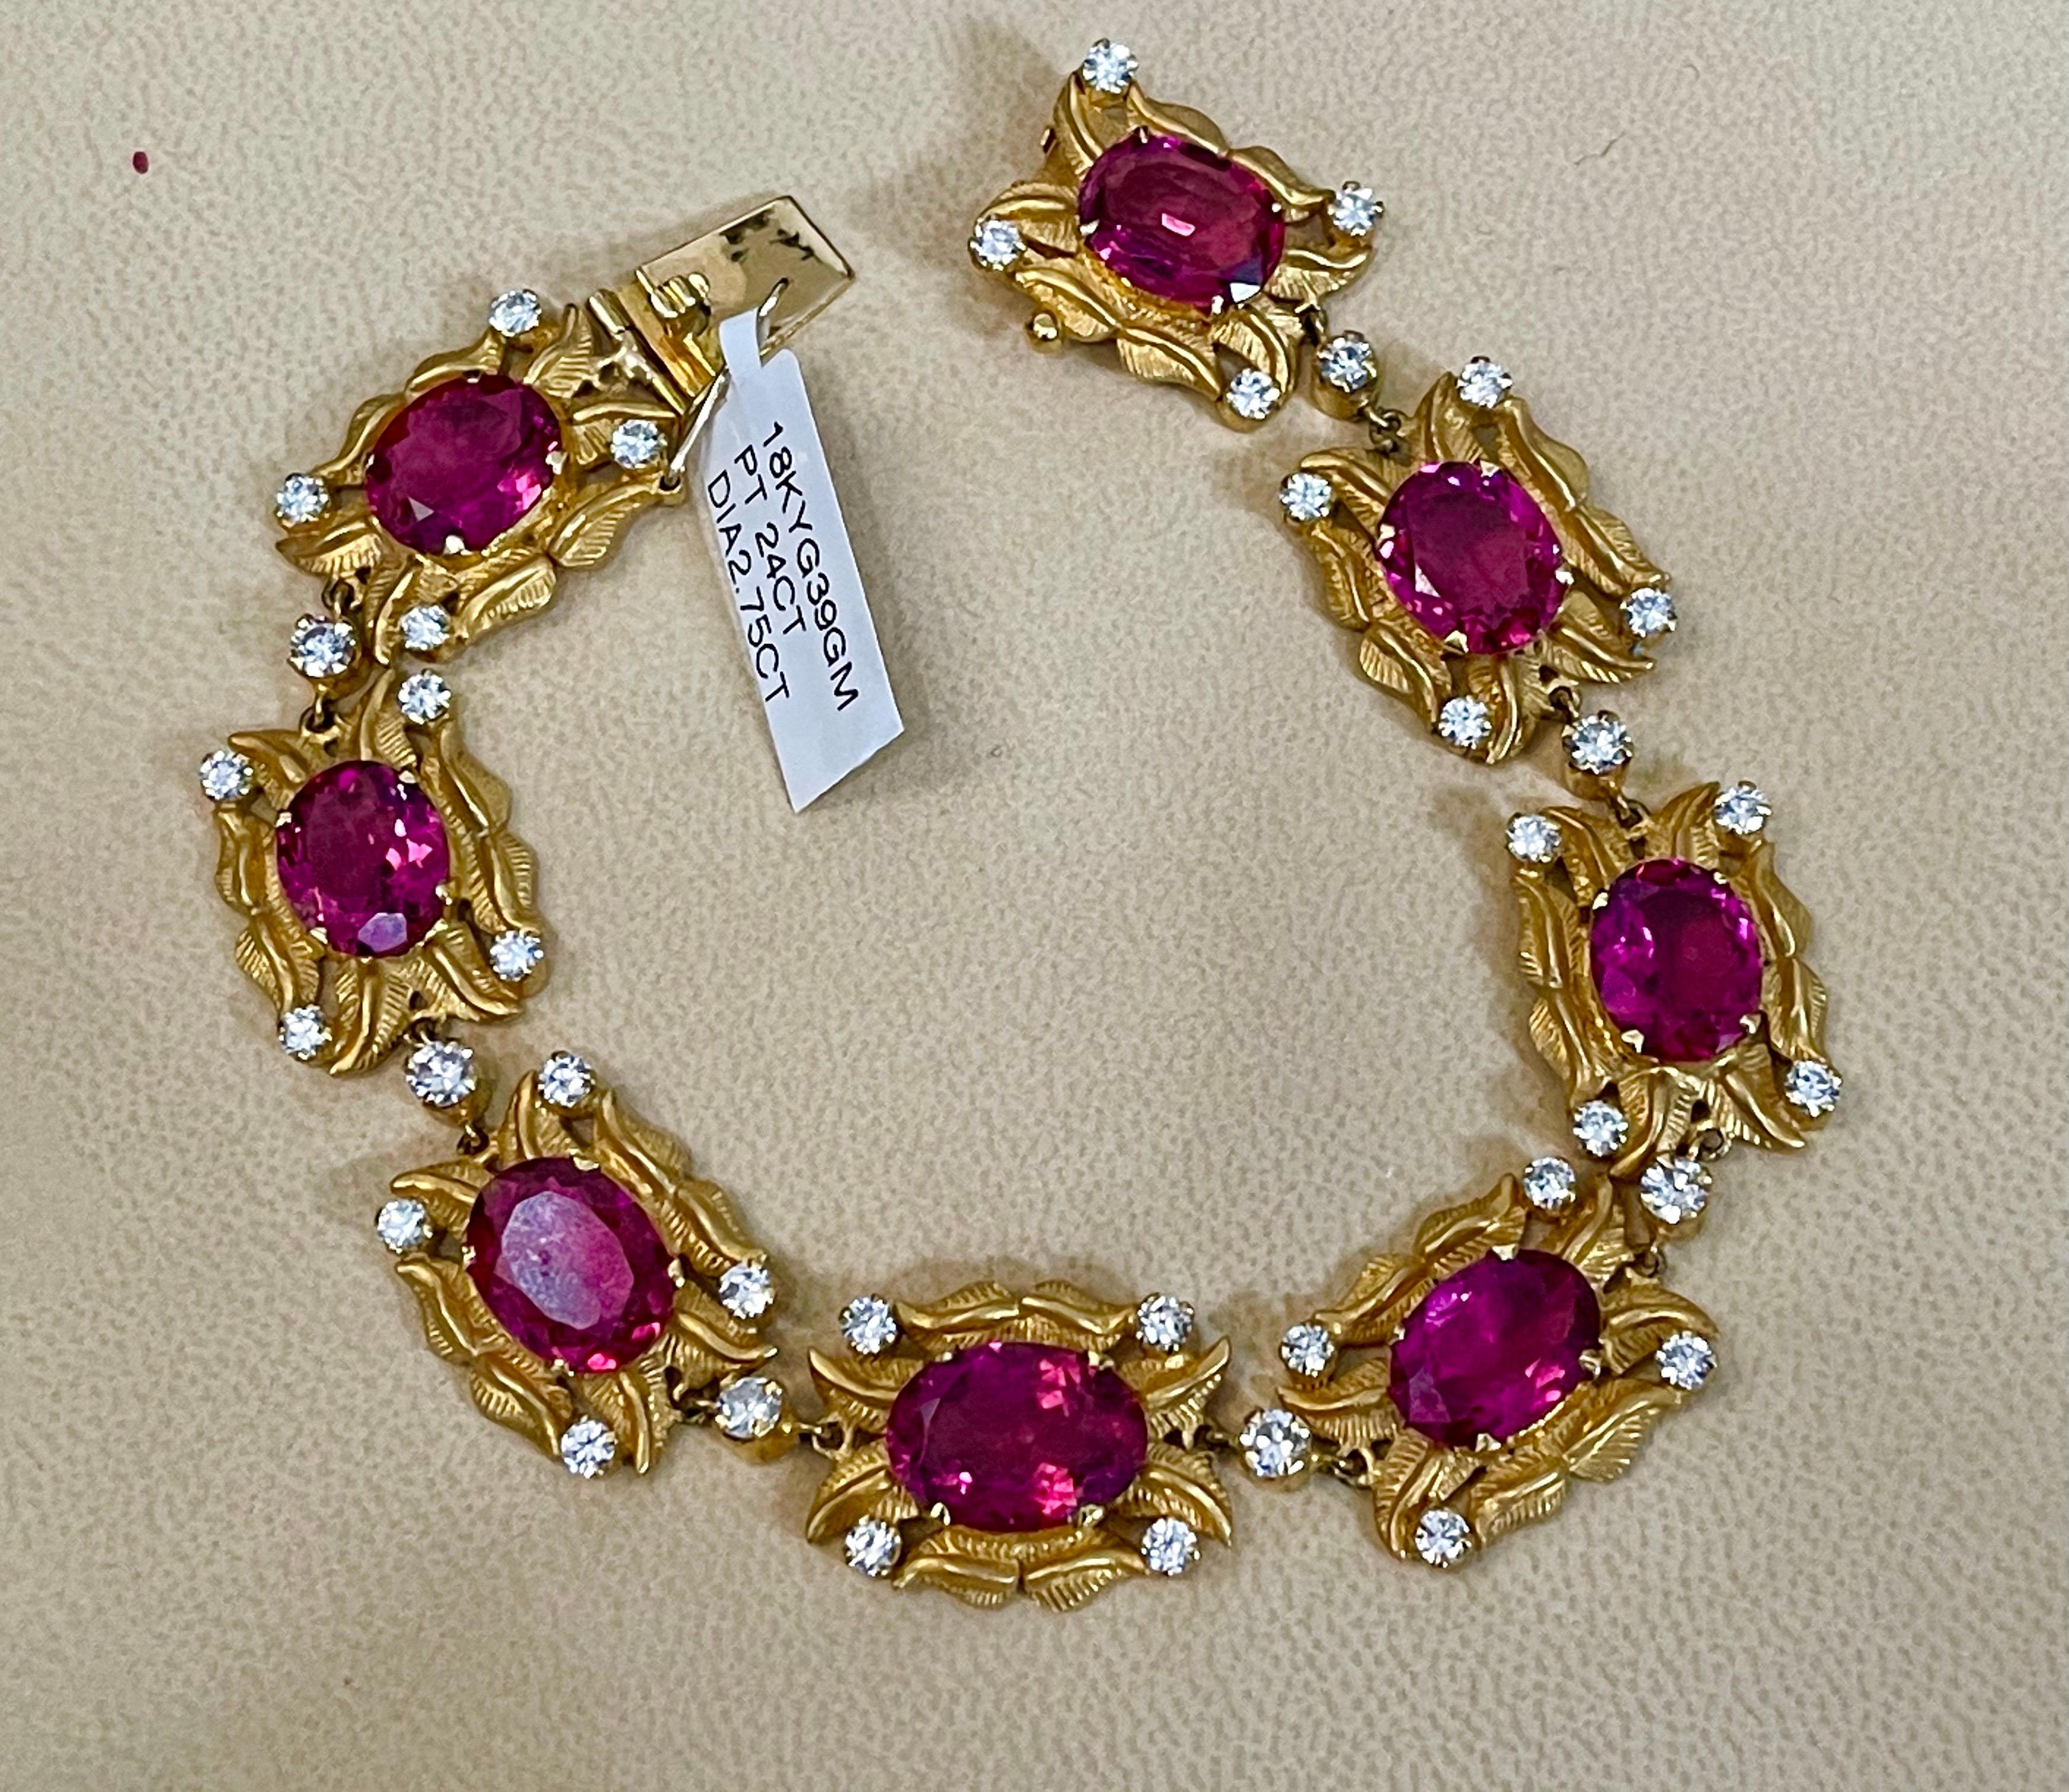 24 Carat Pink Tourmaline and 2.75 Carat Diamond Bracelet  18 Karat Yellow Gold For Sale 1